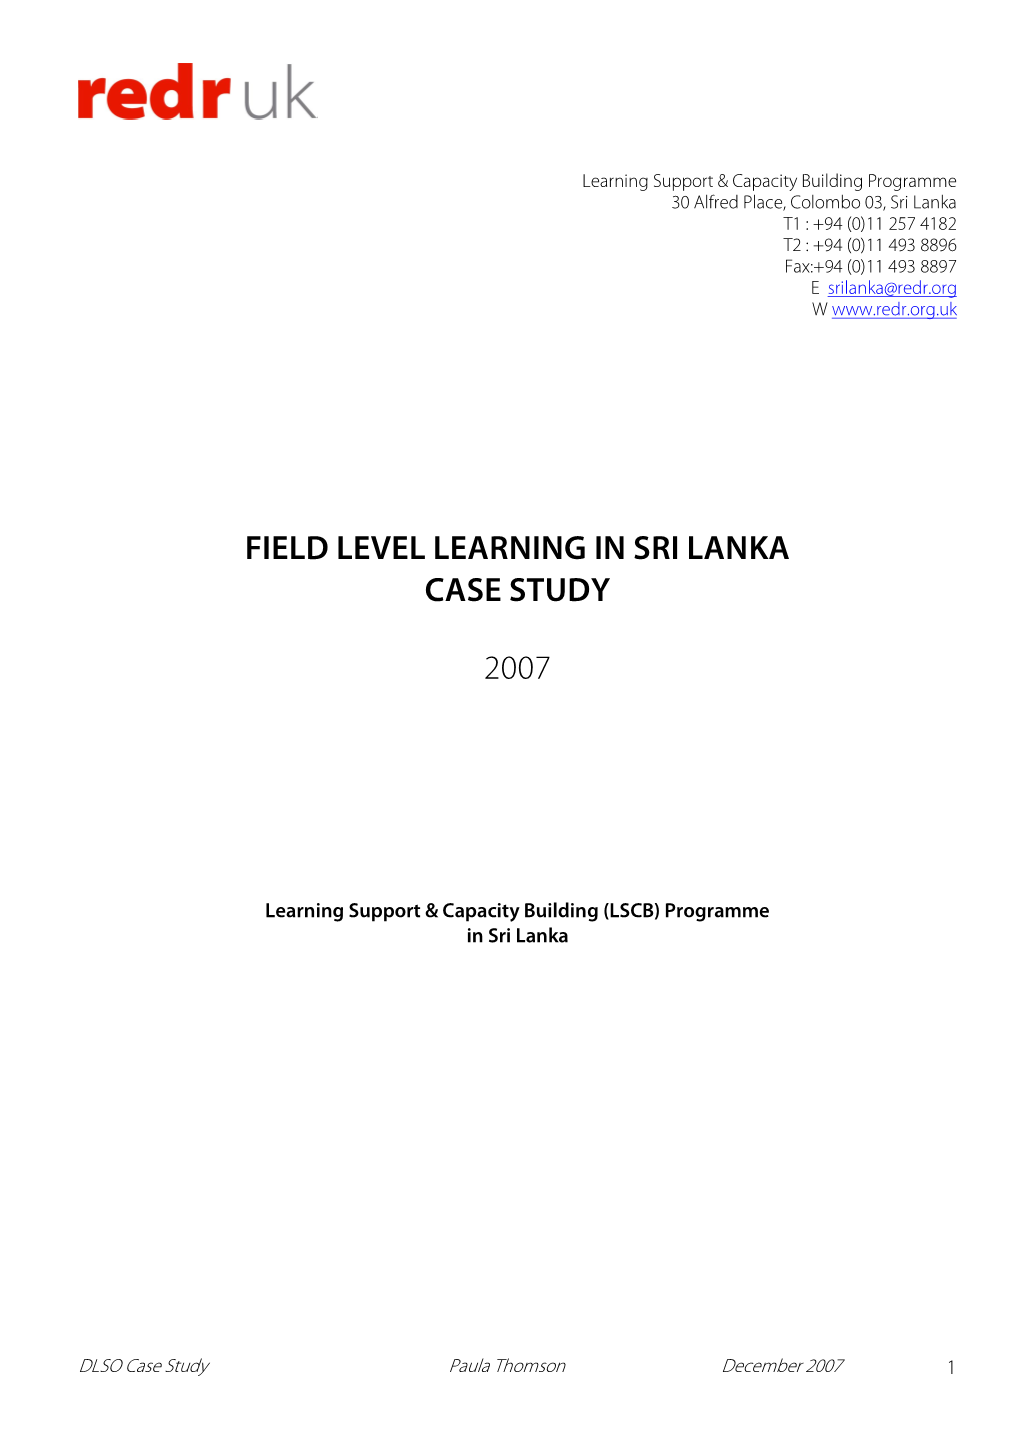 Field Level Learning in Sri Lanka Case Study 2007